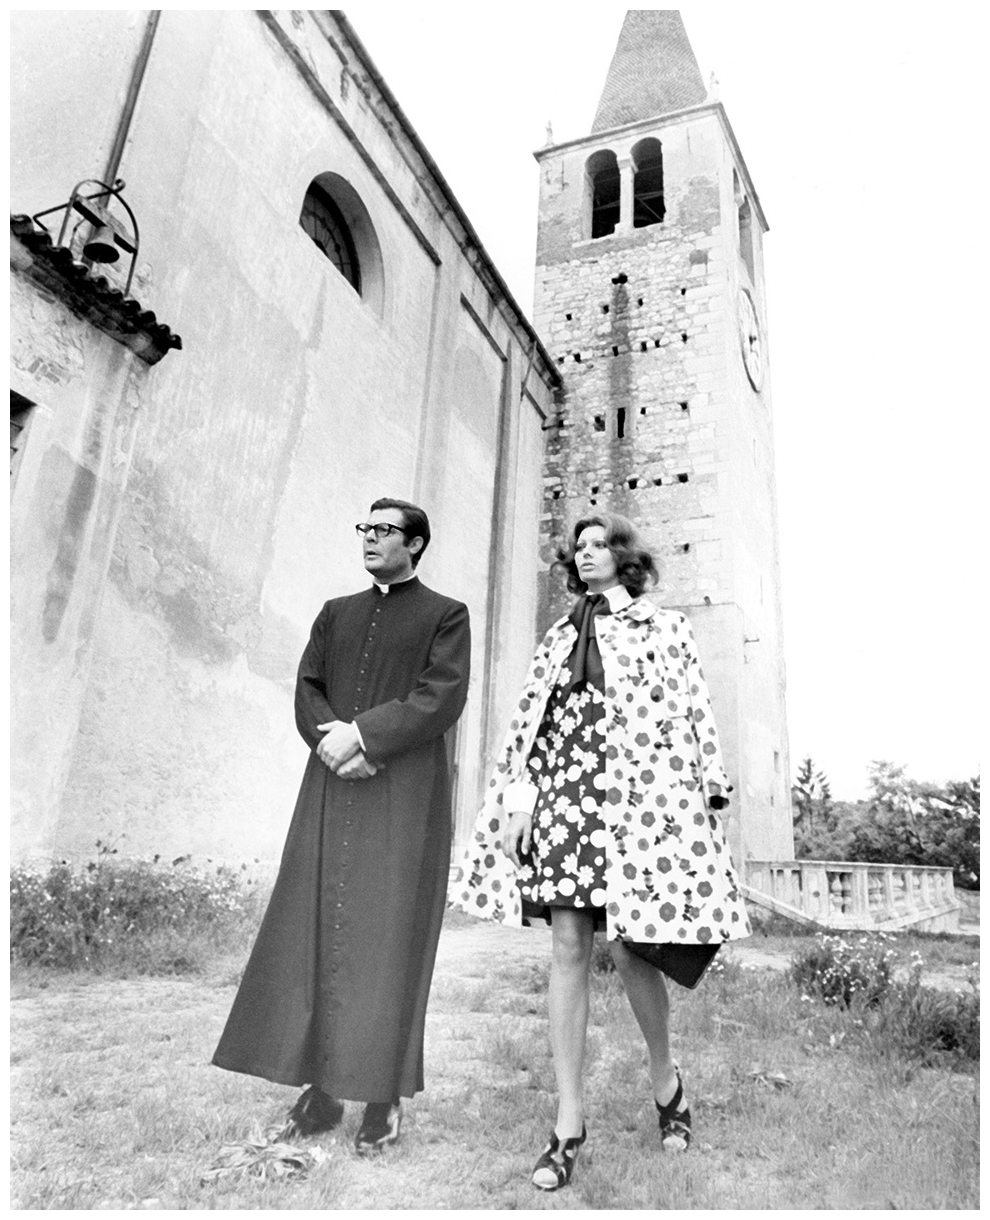 Marcello-Mastroianni-and-Sophia-Loren-The-Priest’s-Wife-1971-directed-by-Dino-Risi-Costume-designer-Gianni-Polidori.jpg